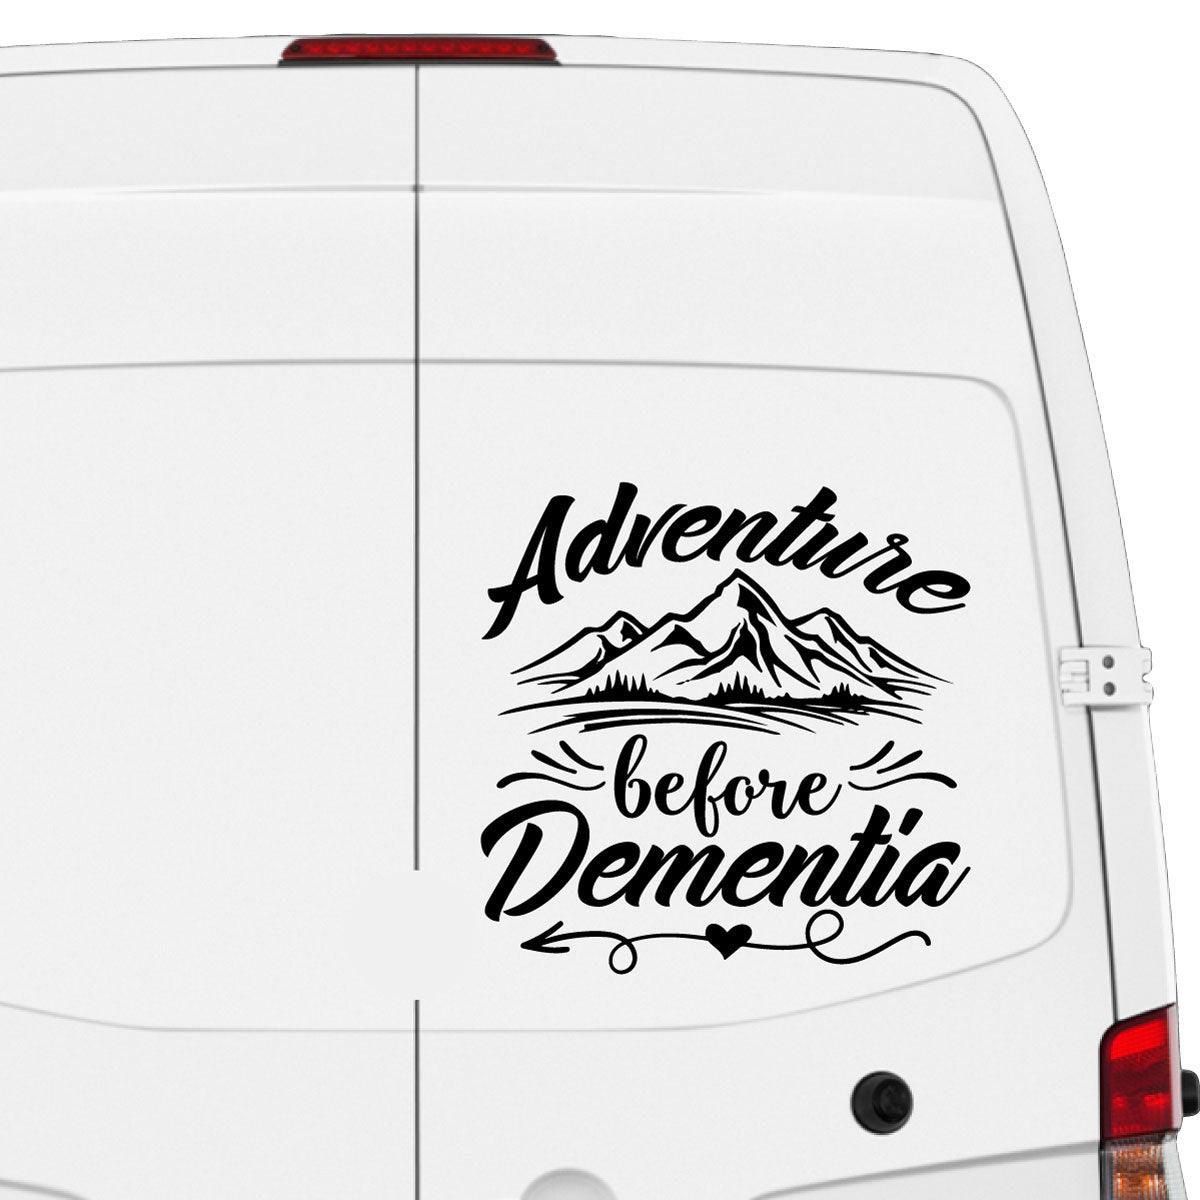 Adventure Before Dementia car RV motorhome camper vehicle sticker deca